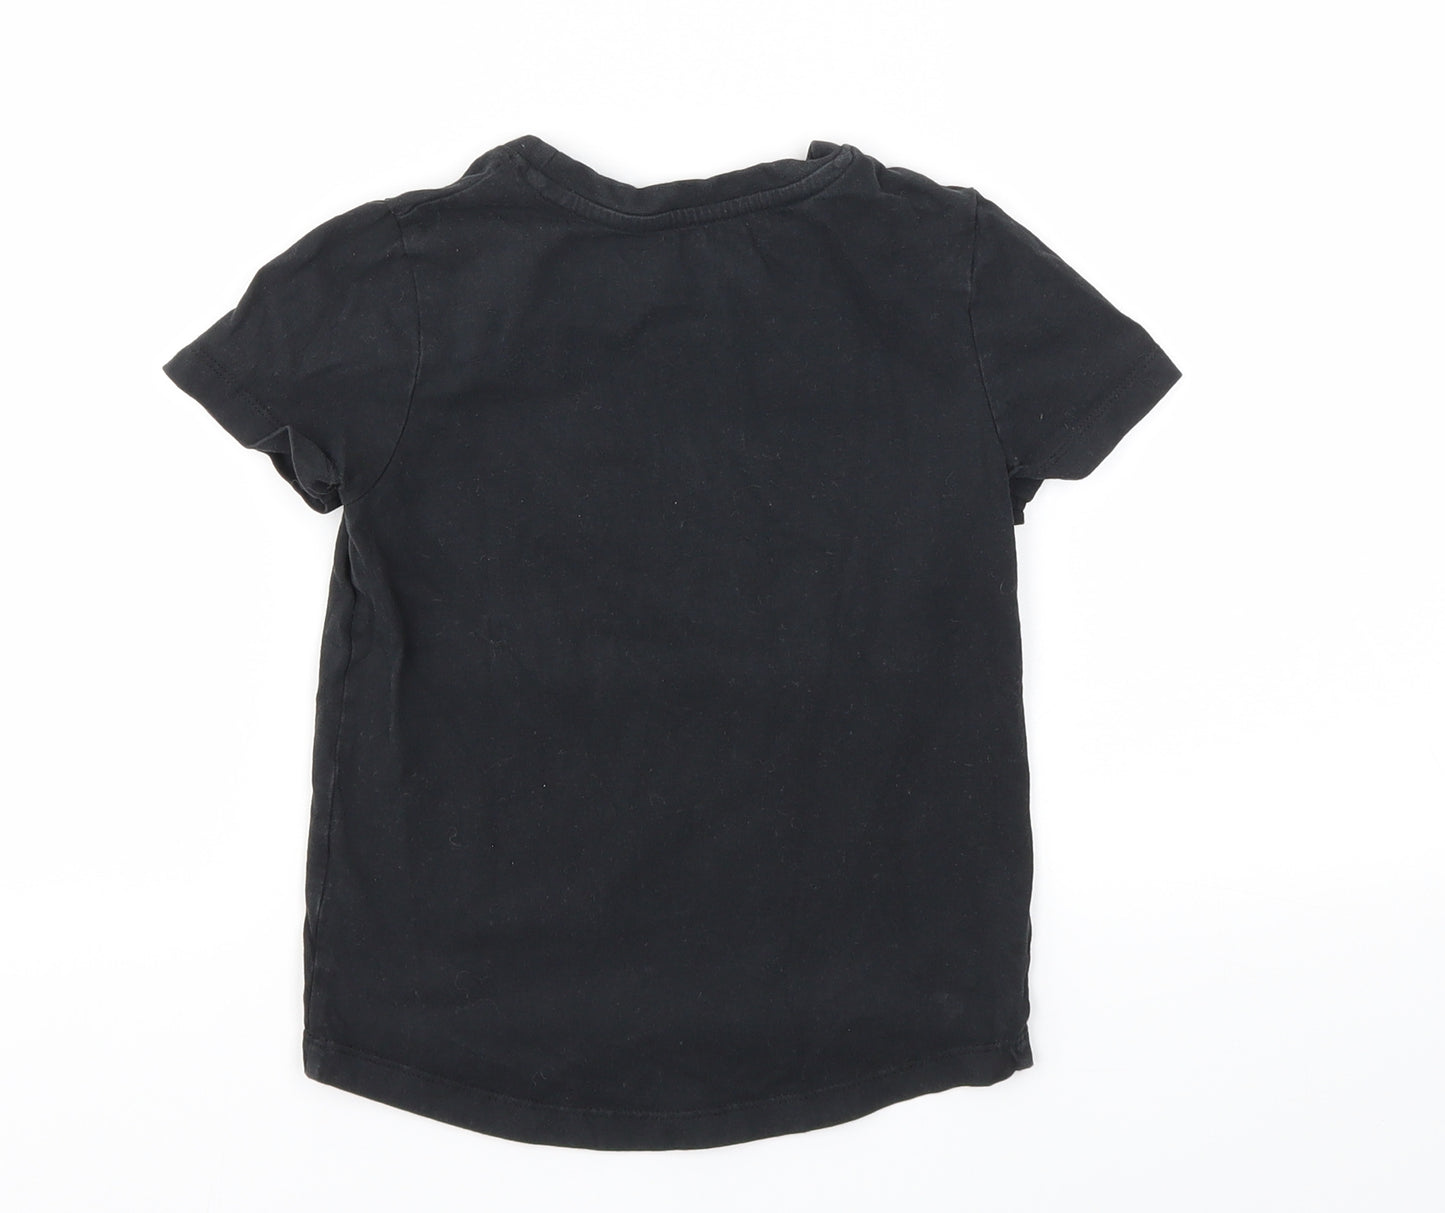 Nutmeg Boys Black   Basic T-Shirt Size 3-4 Years